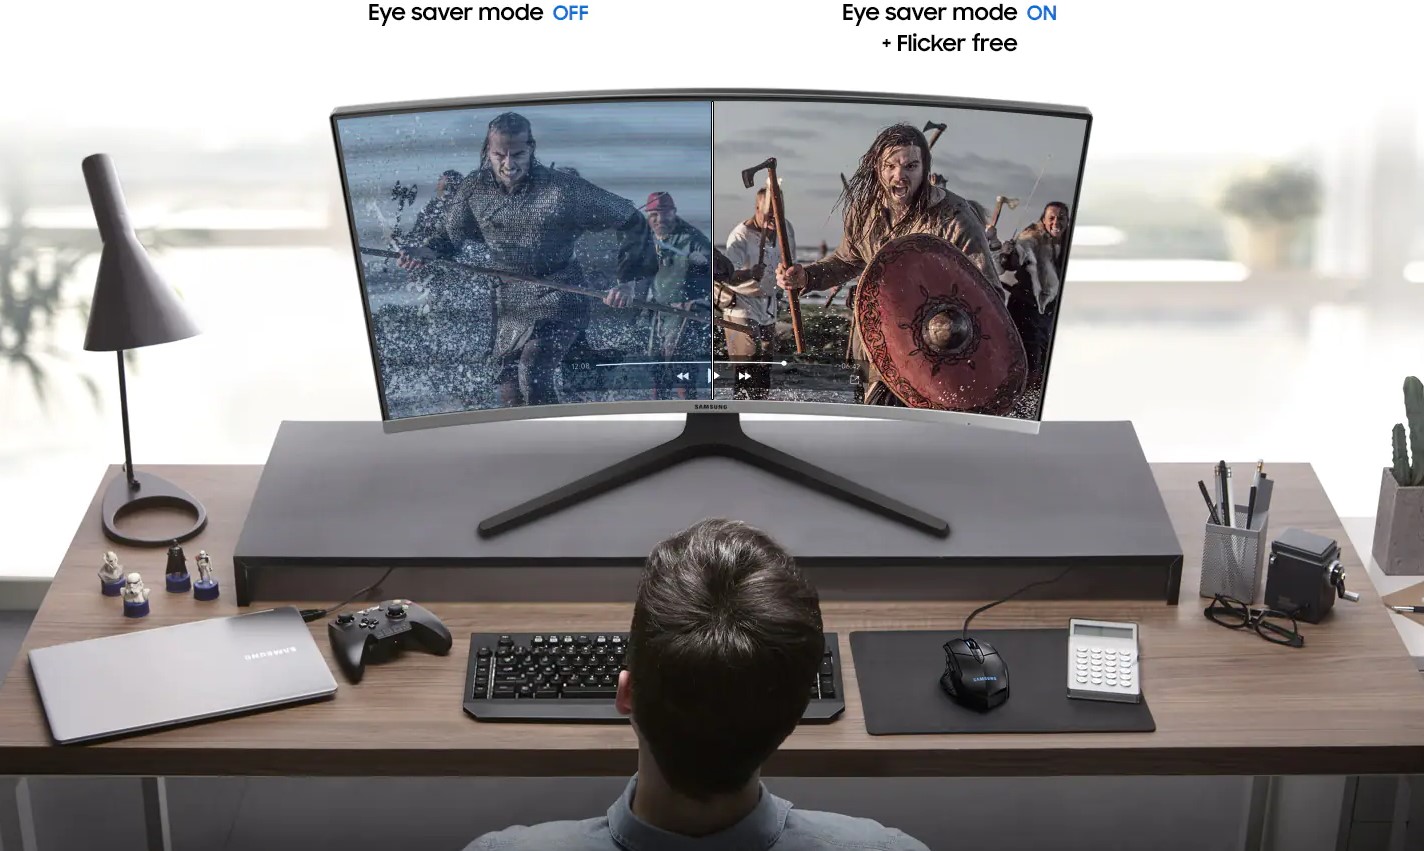 Samsung_32-inch_FHD_Curved_Monitor_eye_saver